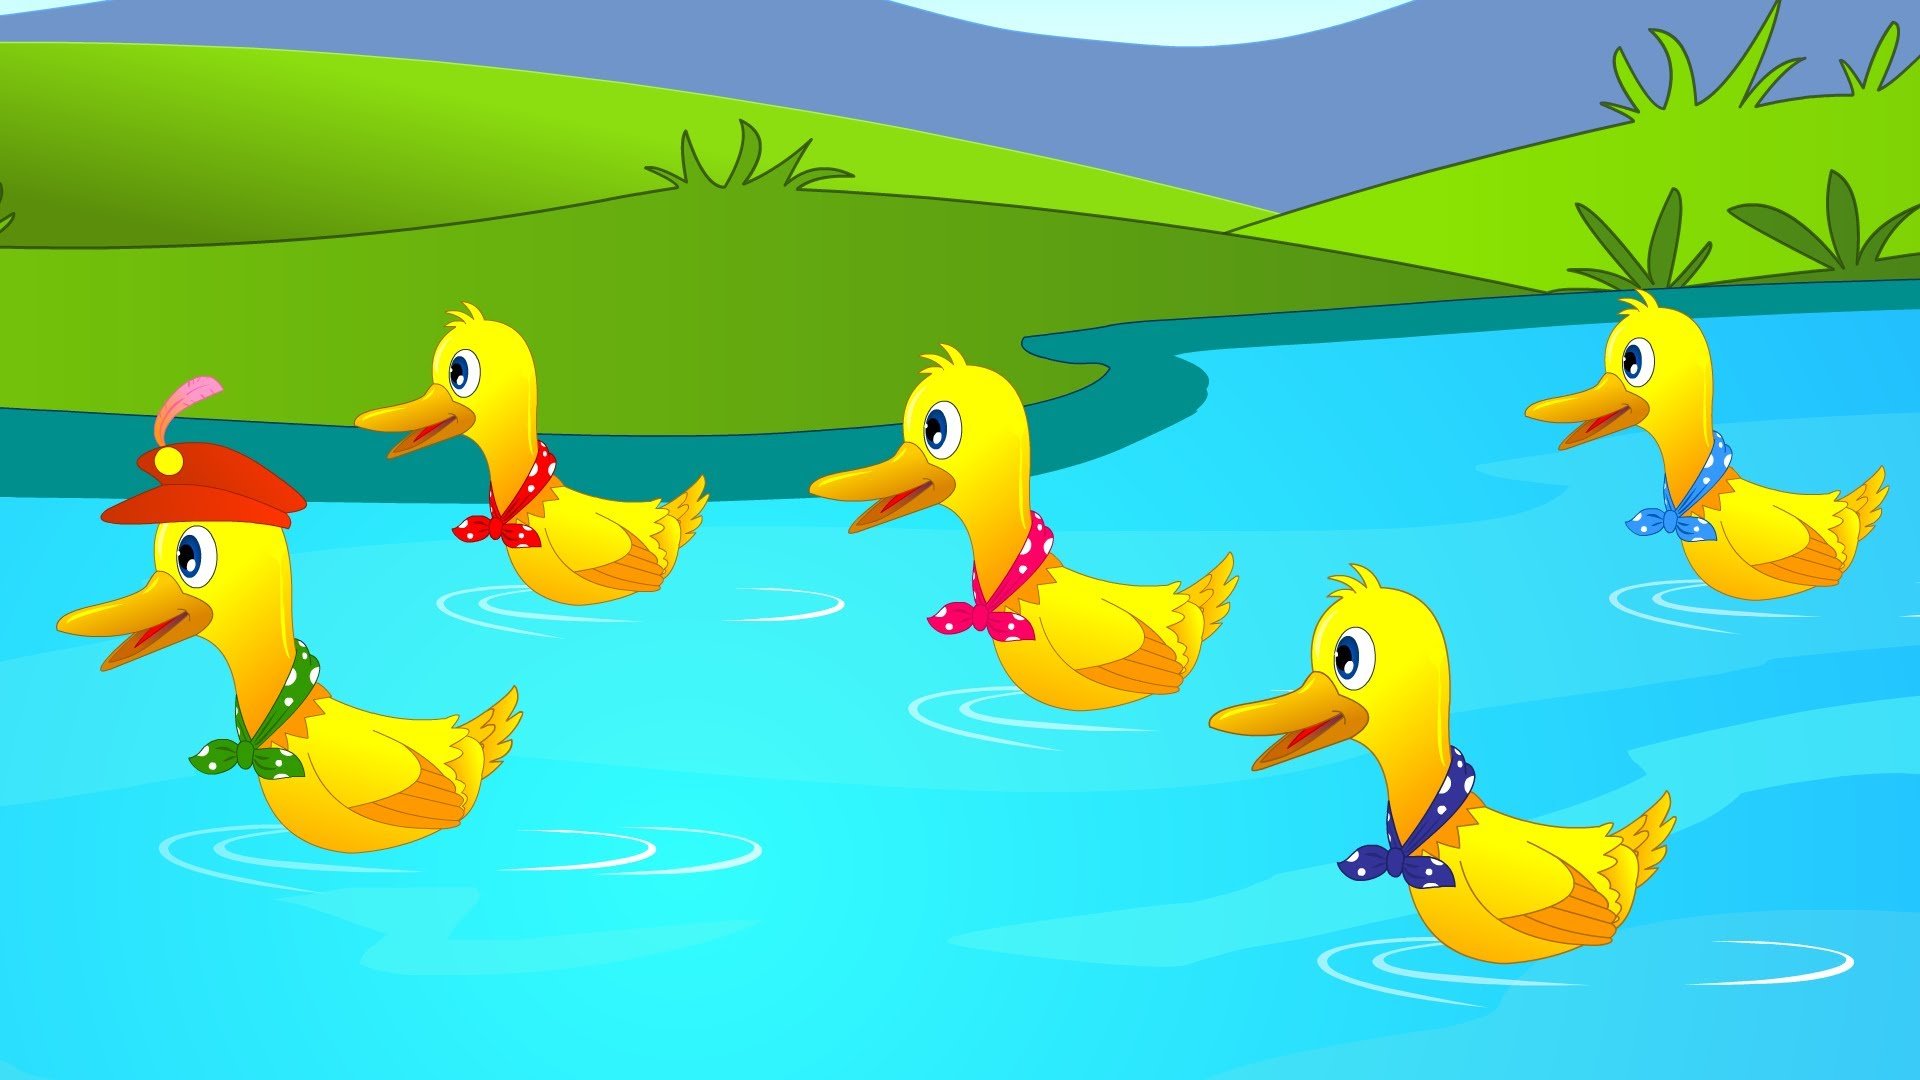 Five little Ducks